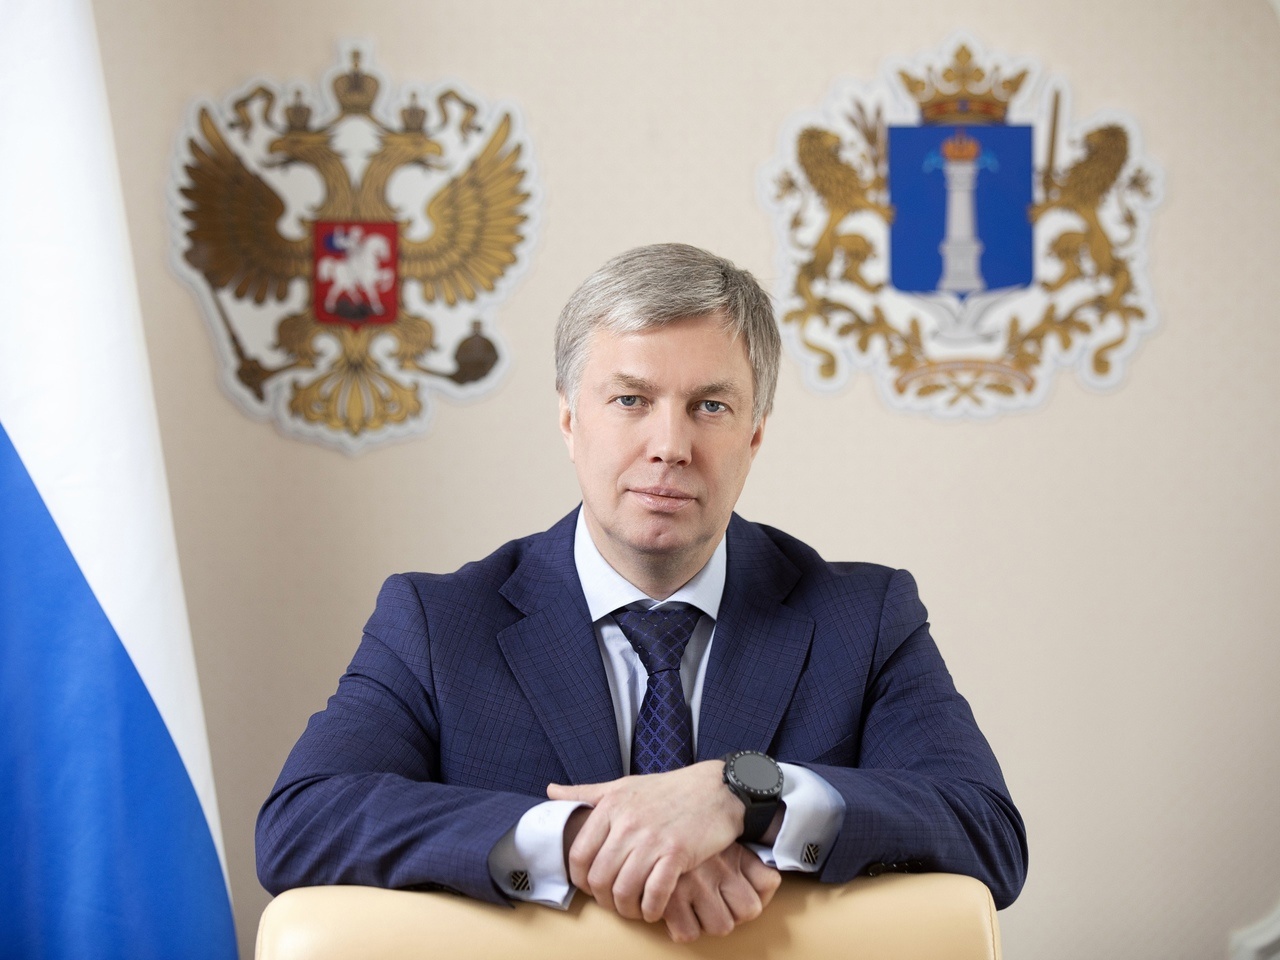 17 июля Губернатор Ульяновской области Алексей Русских отмечает 55-летний юбилей.